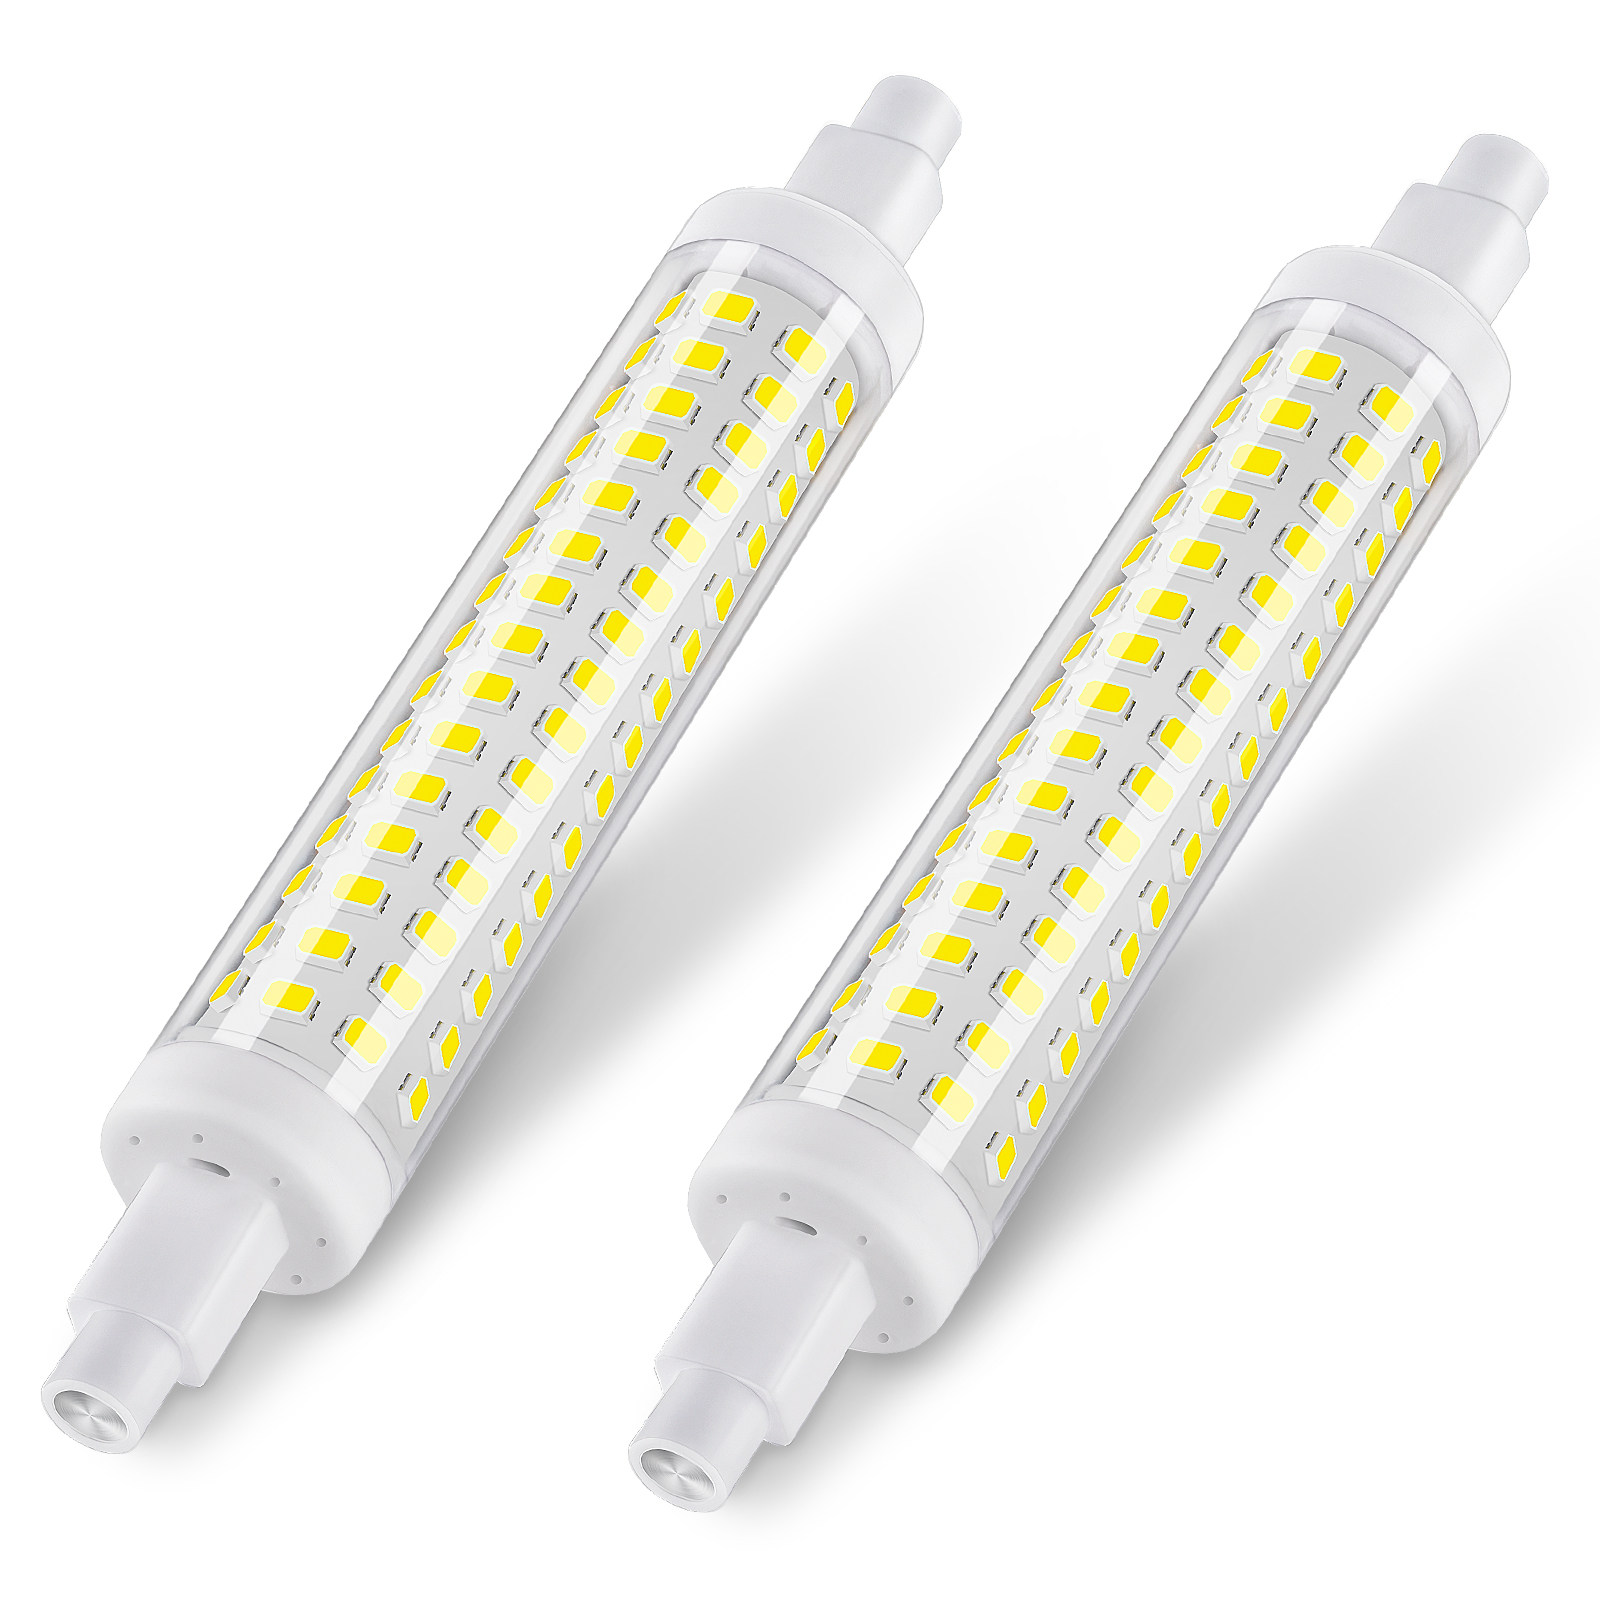 DiCUNO Ampoule LED G9 blanc froid 6000K, 3W équivalen 40W halogène,  Non-dimmable, 430LM, CRI> 85, Petite ampoule G9 à économie d'énergie pour  lustre et salle de bain etc, 10 Pièces : 